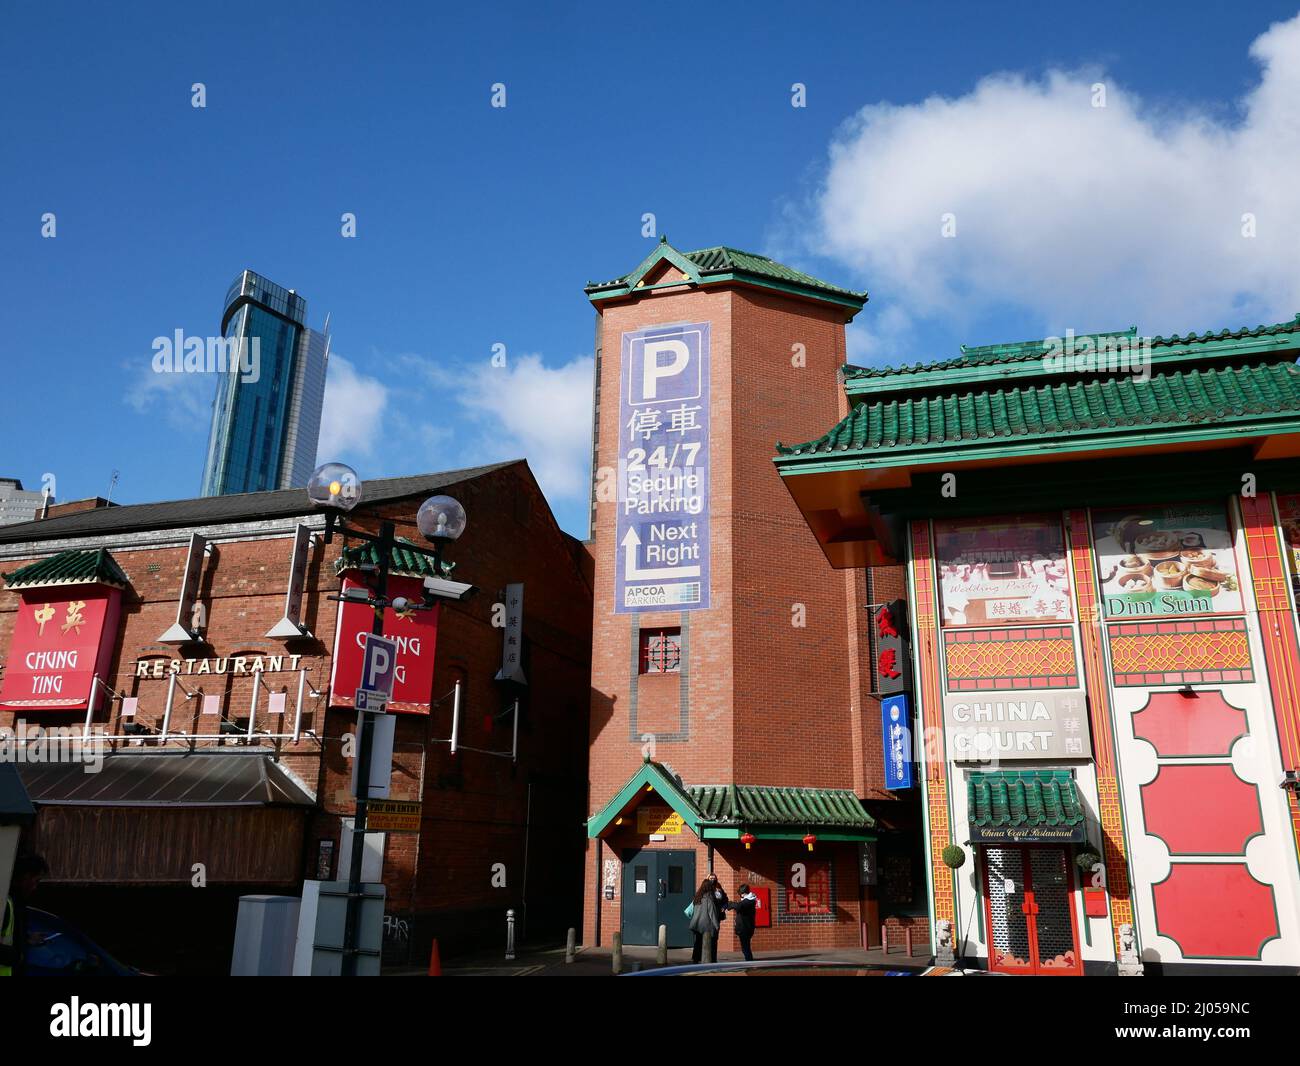 Chinatown, Birmingham UK Stock Photo